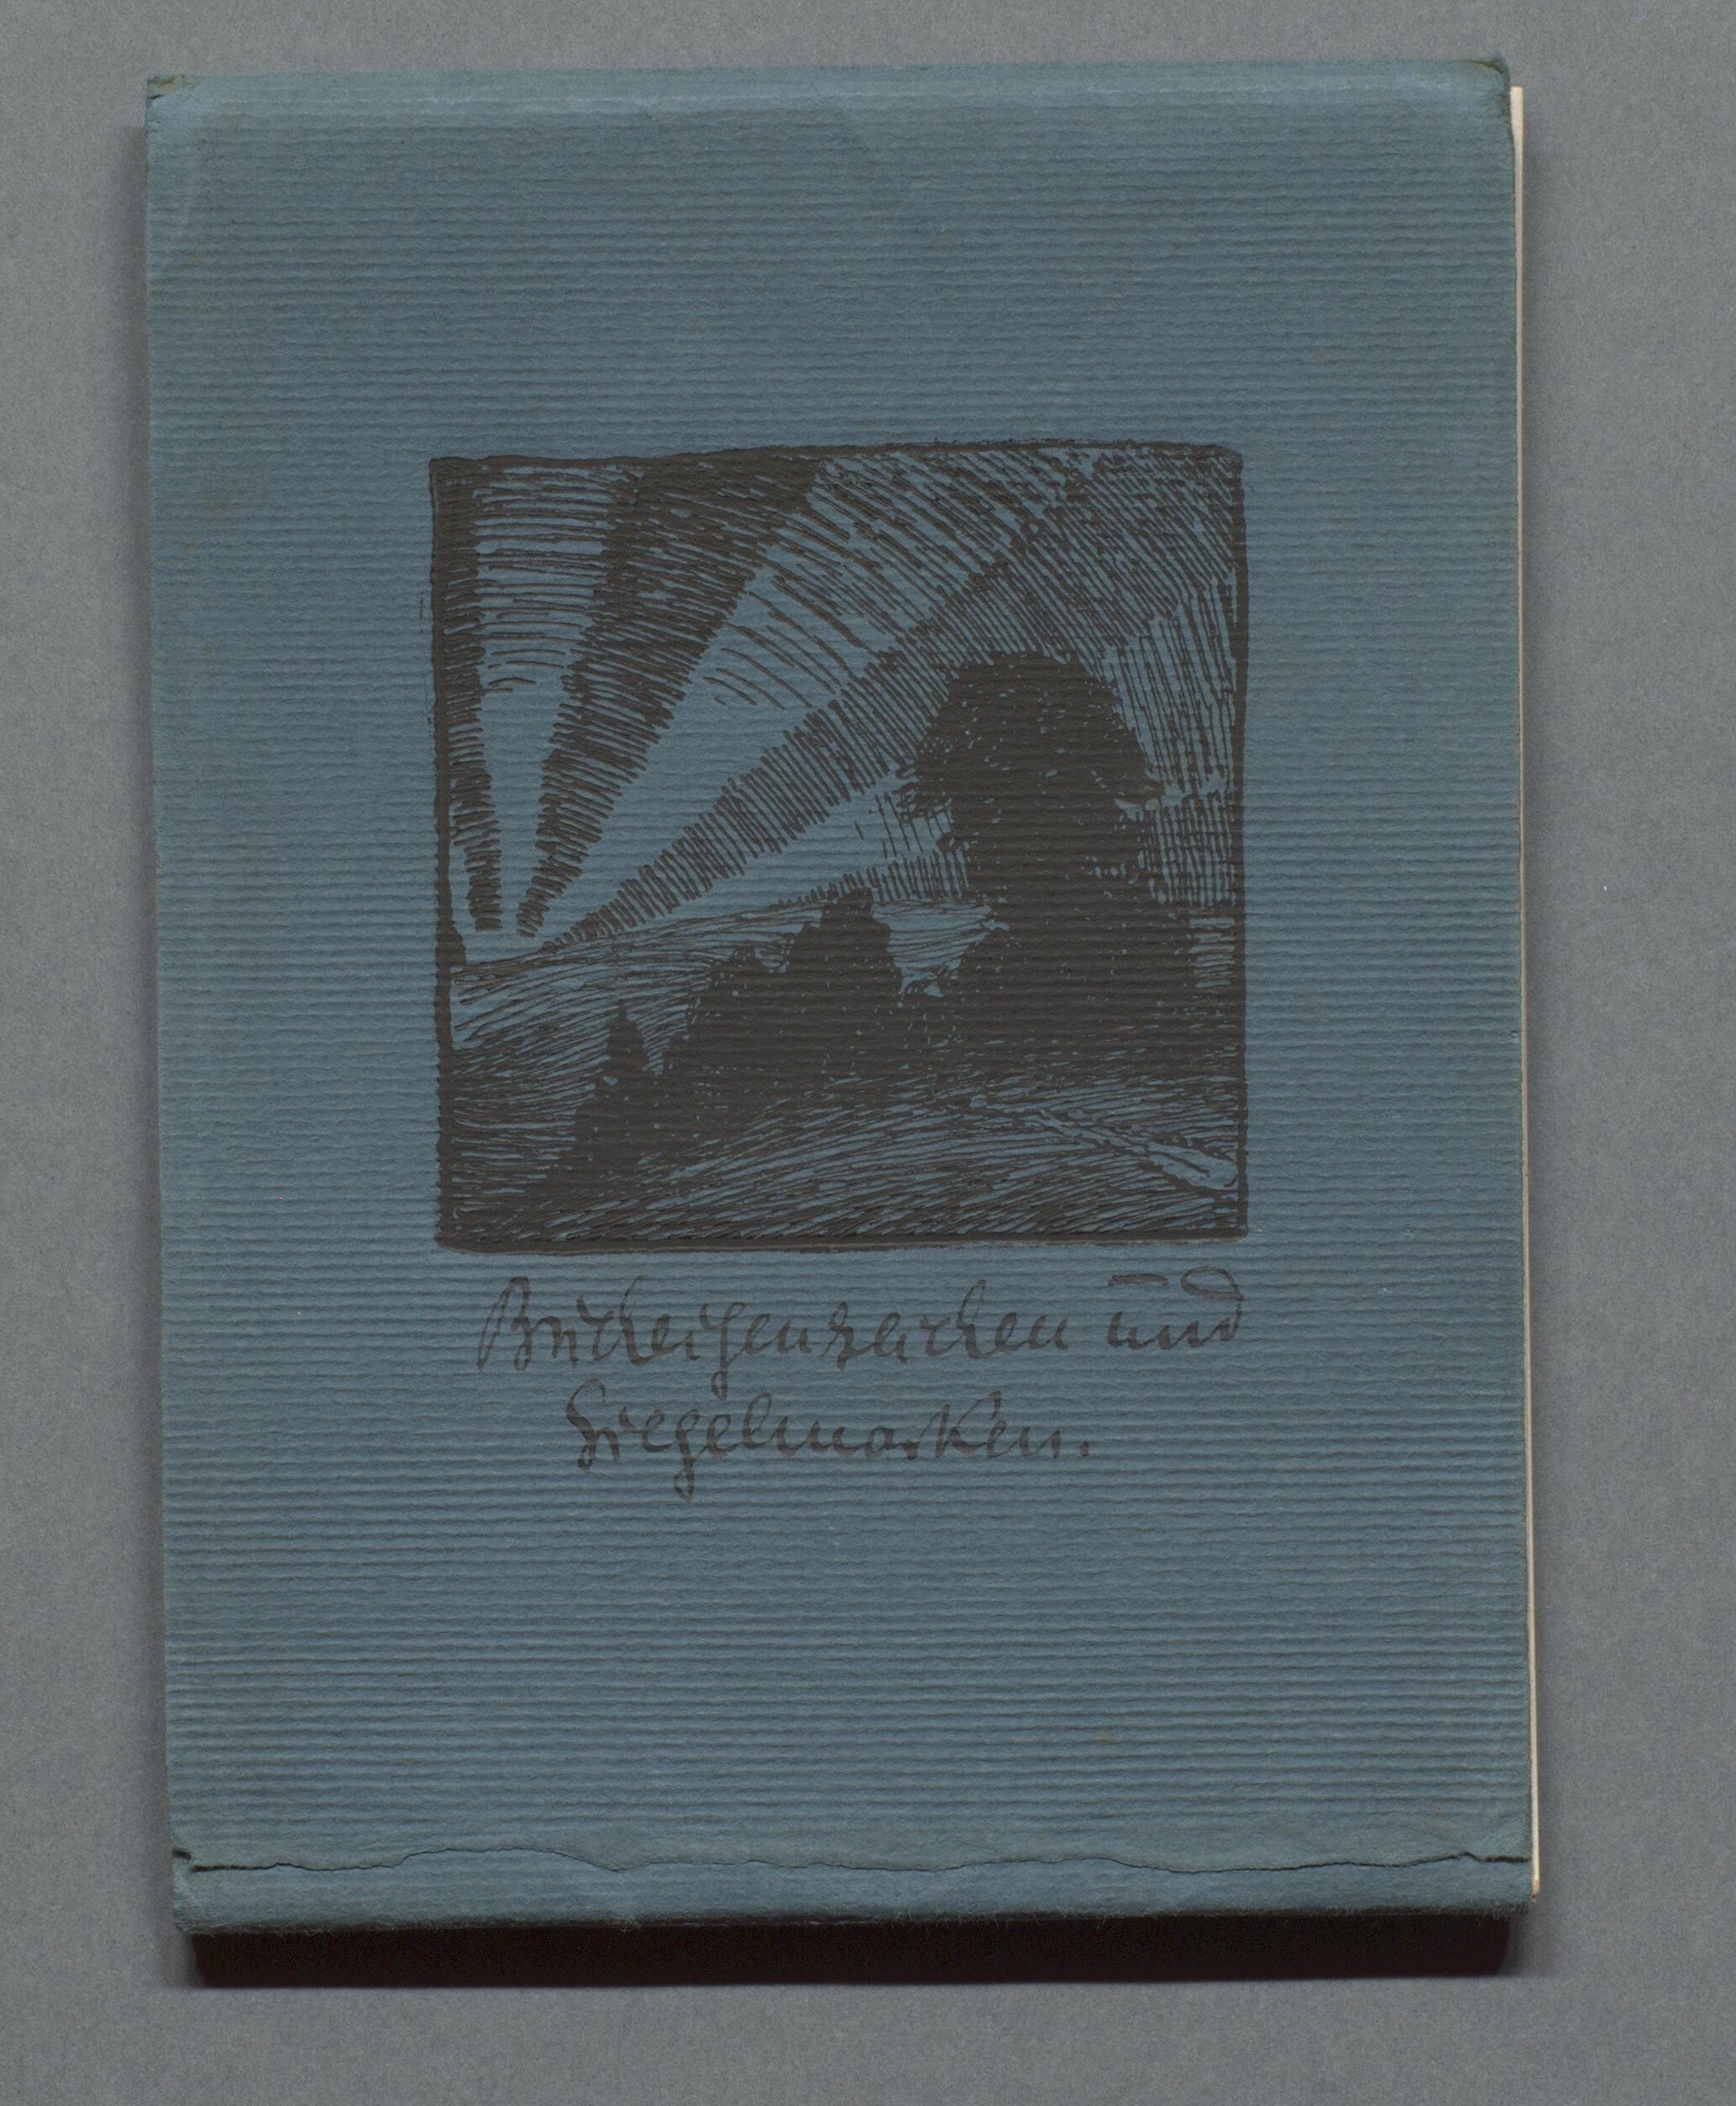 Sammlung "Bucheigenzeichen und Siegelmarken" (Gleimhaus CC BY-NC-SA)